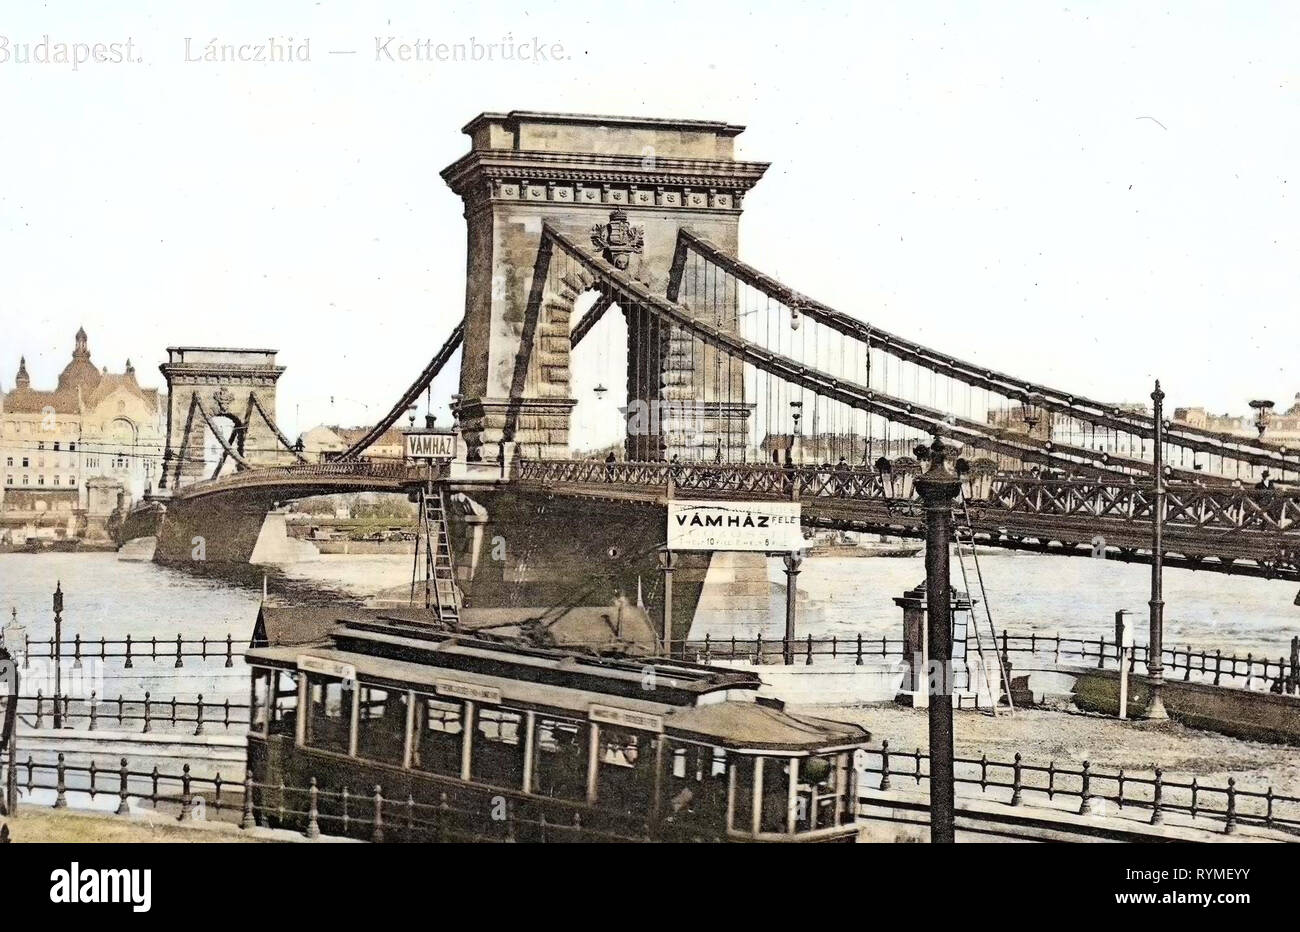 Historische Bilder der Kettenbrücke, Budapest, Straßenbahnen in Budapest, Budapester Straßenbahnen rechts, 1907, Kettenbrücke mit Bahnlinie, Ungarn Stockfoto